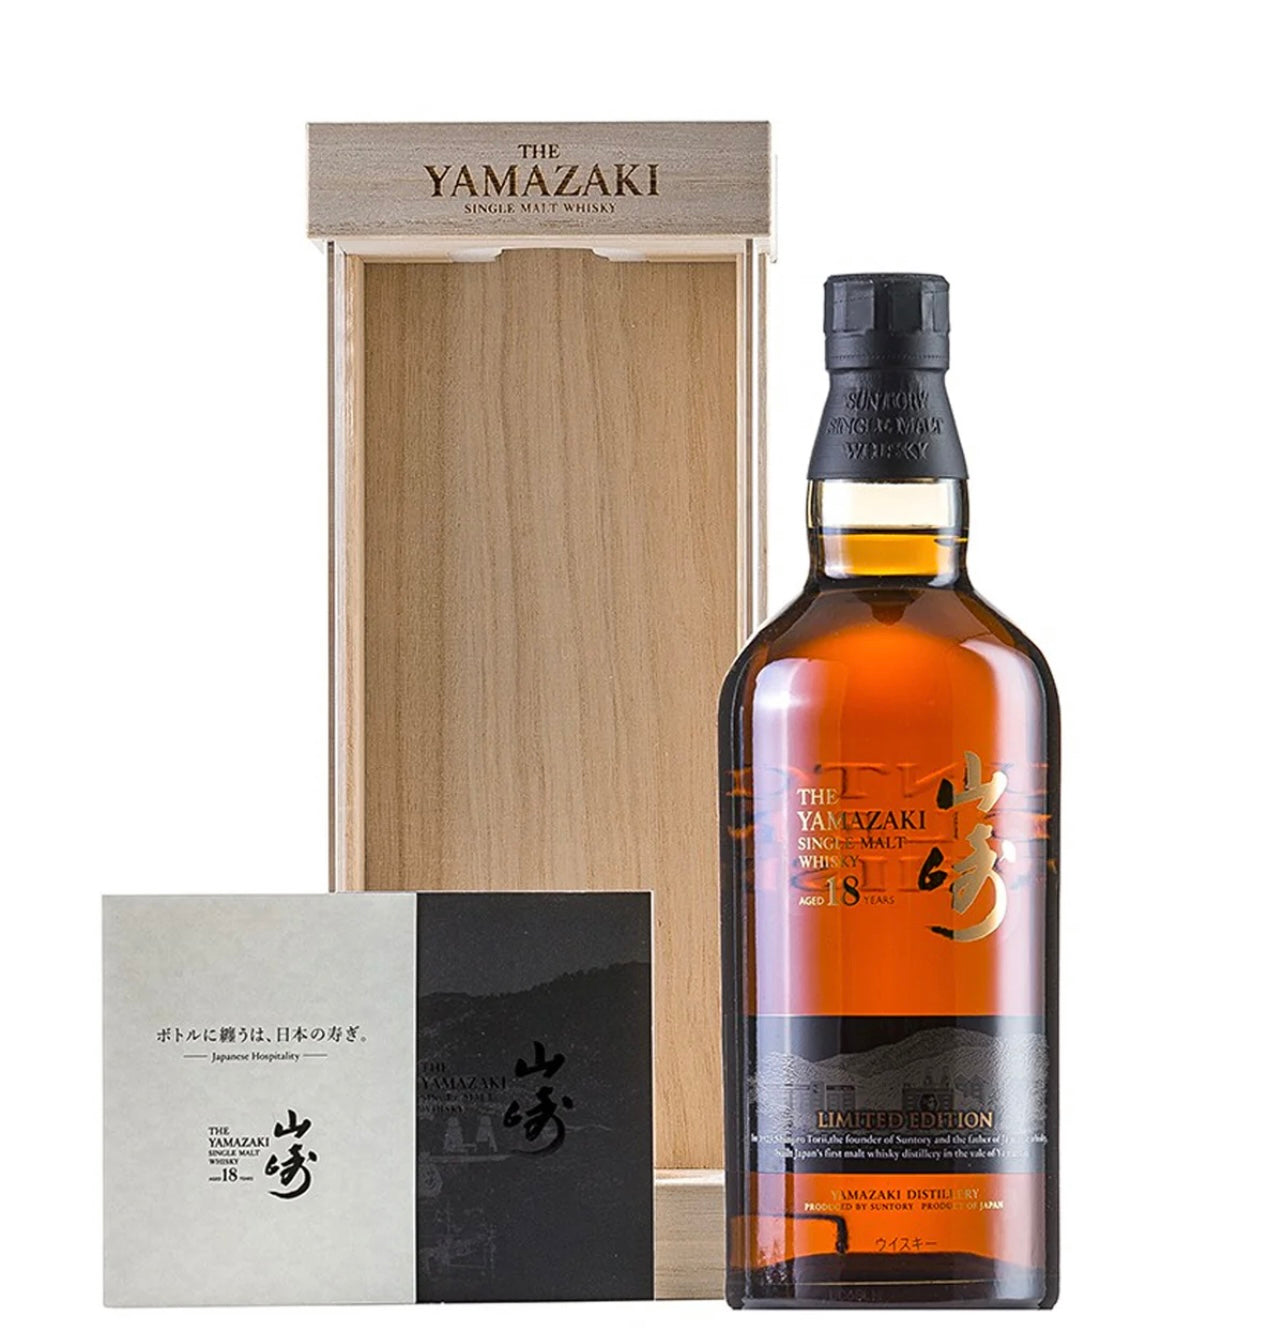 The Yamazaki 18 Year Old Limited Edition Japanese Whisky